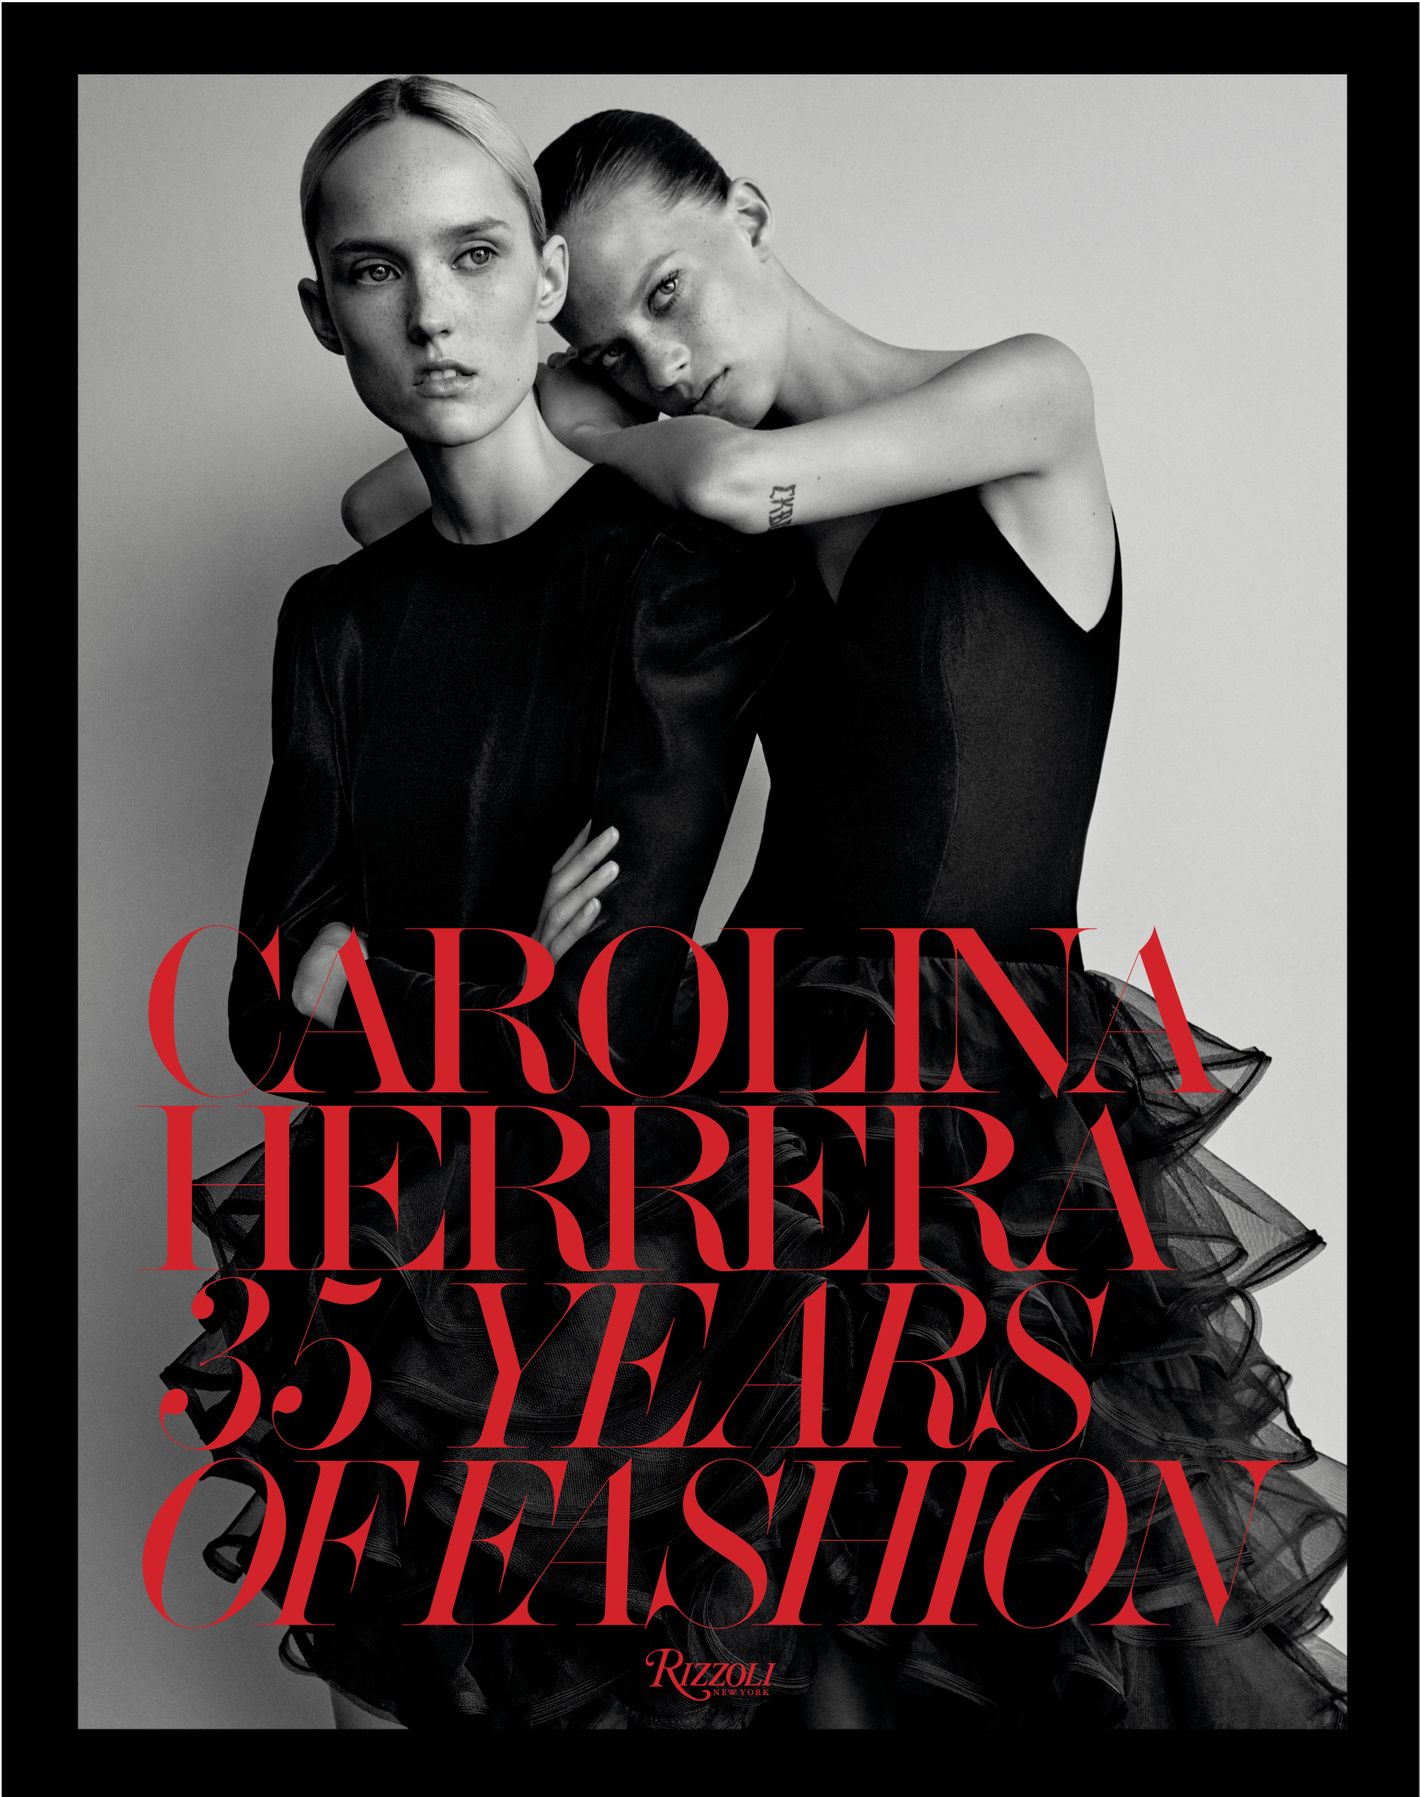 CAROLINA HERRERA: An icon of beauty and elegance